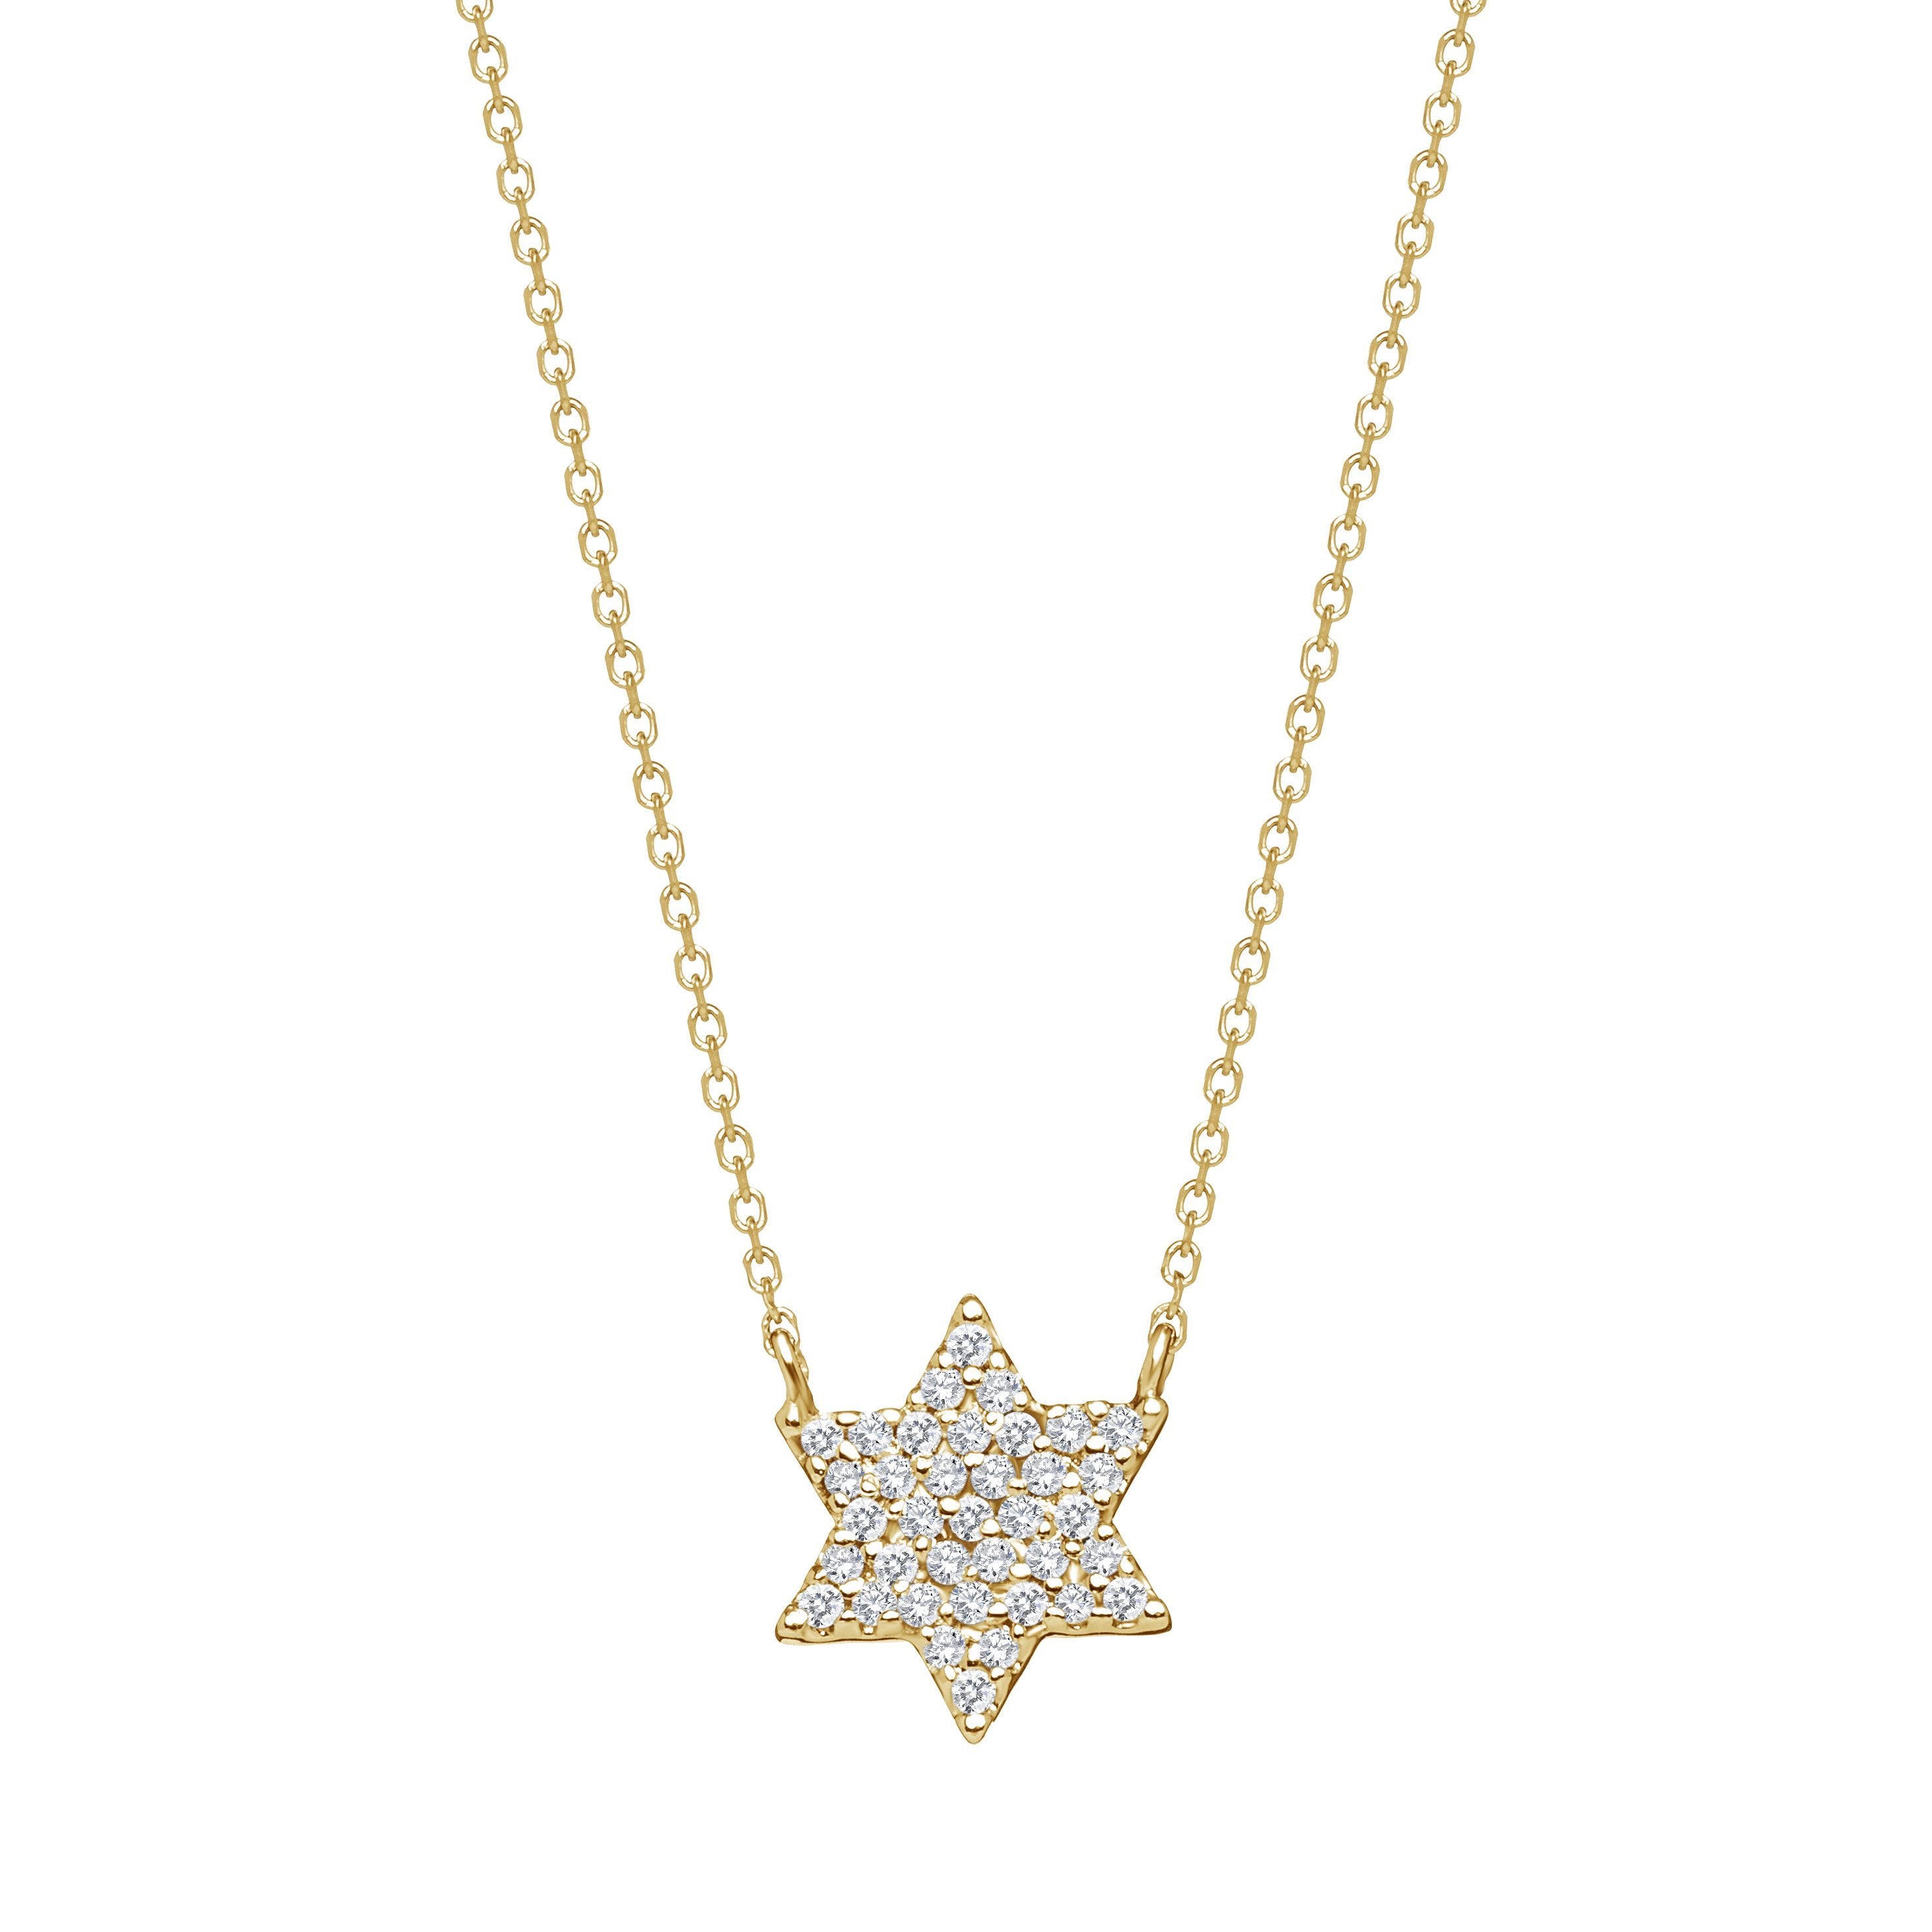 Sparkling Jewish Star Necklace - Alef Bet Jewelry by Paula